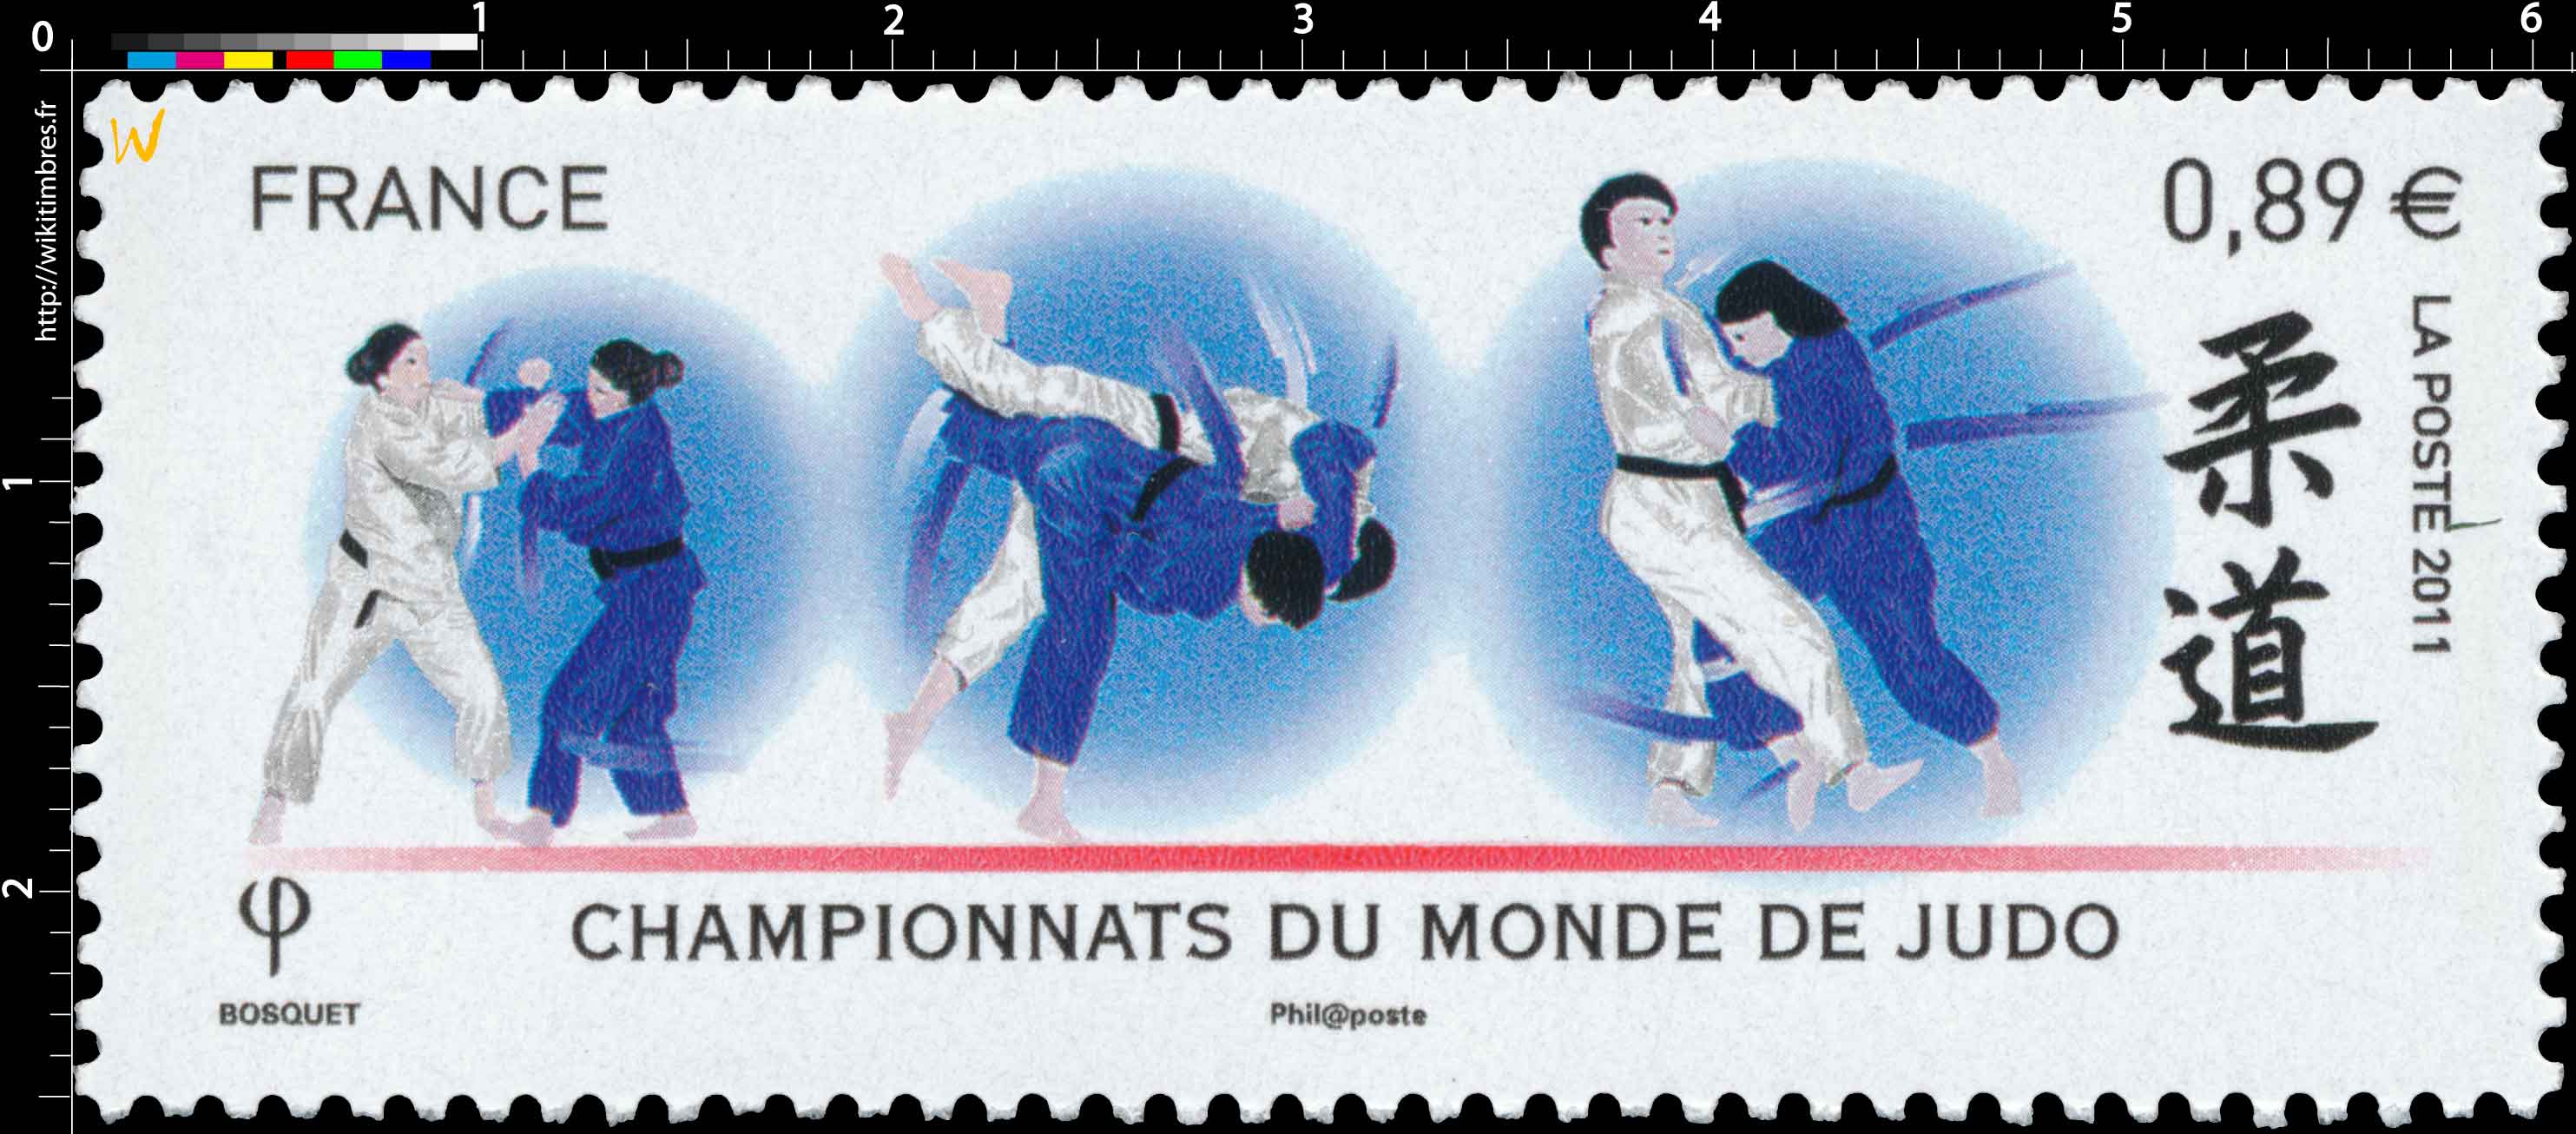 2011 Championnats du monde de judo